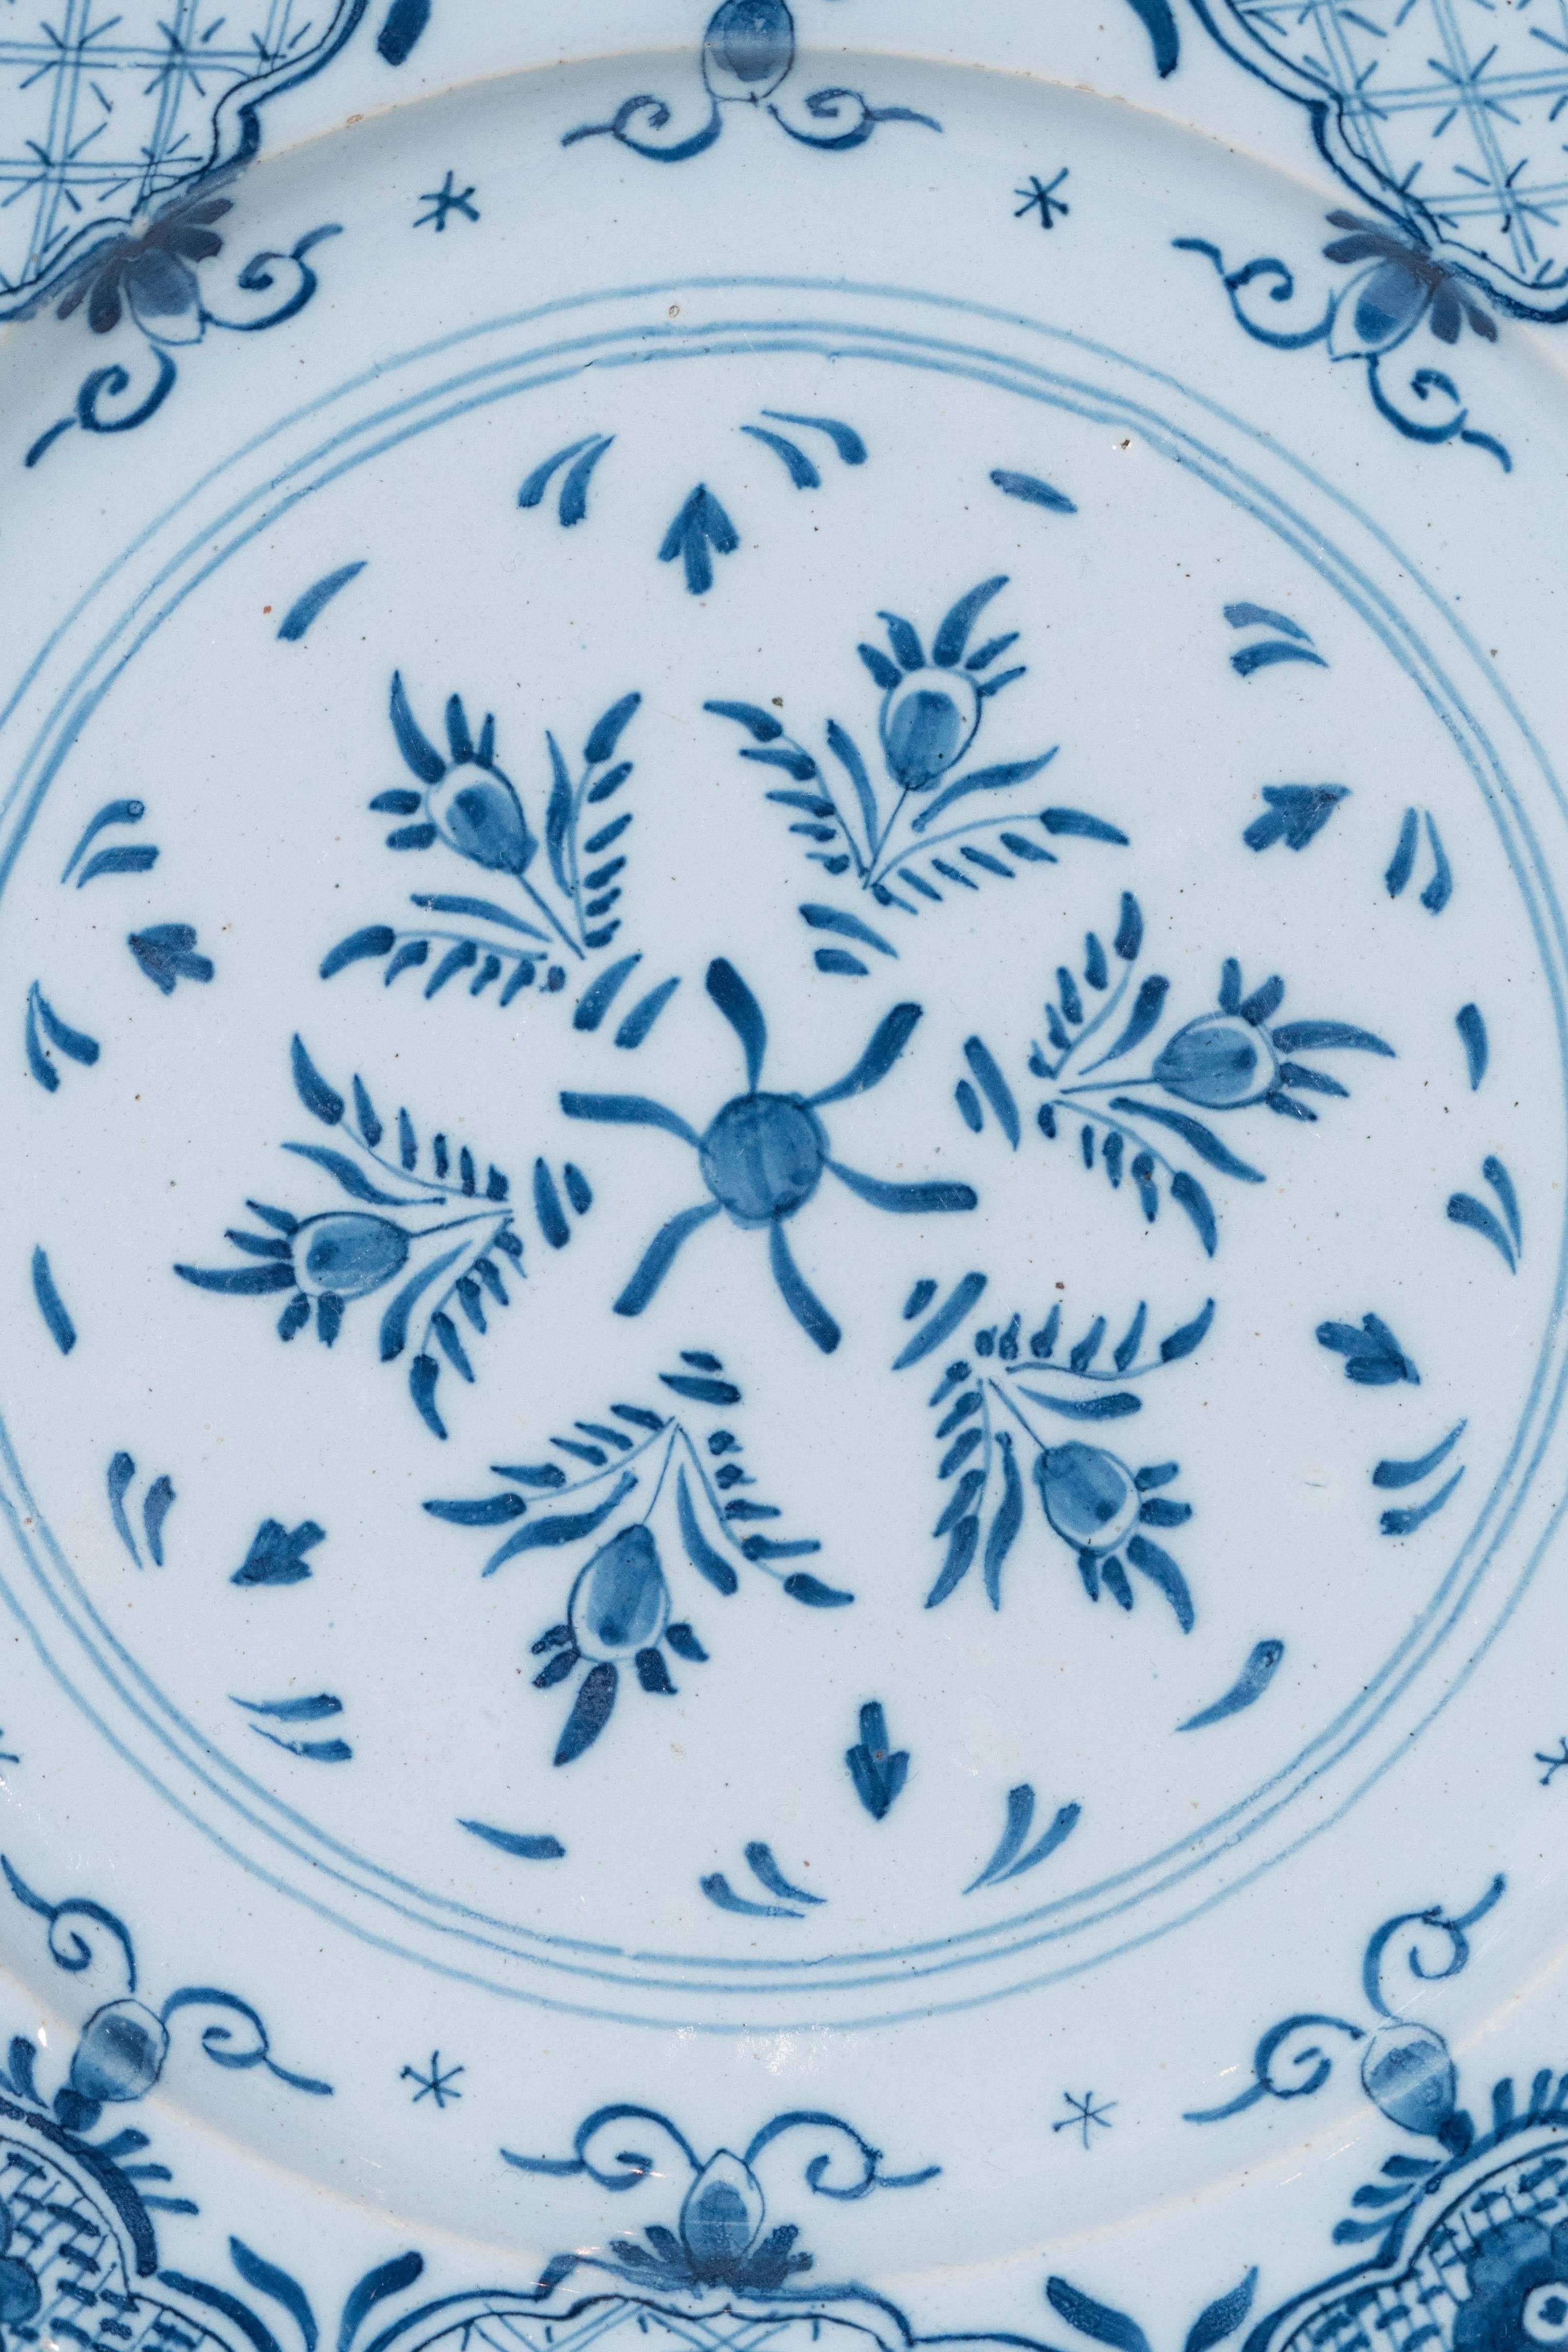 Rococo Antique Blue and White Delft Dishes